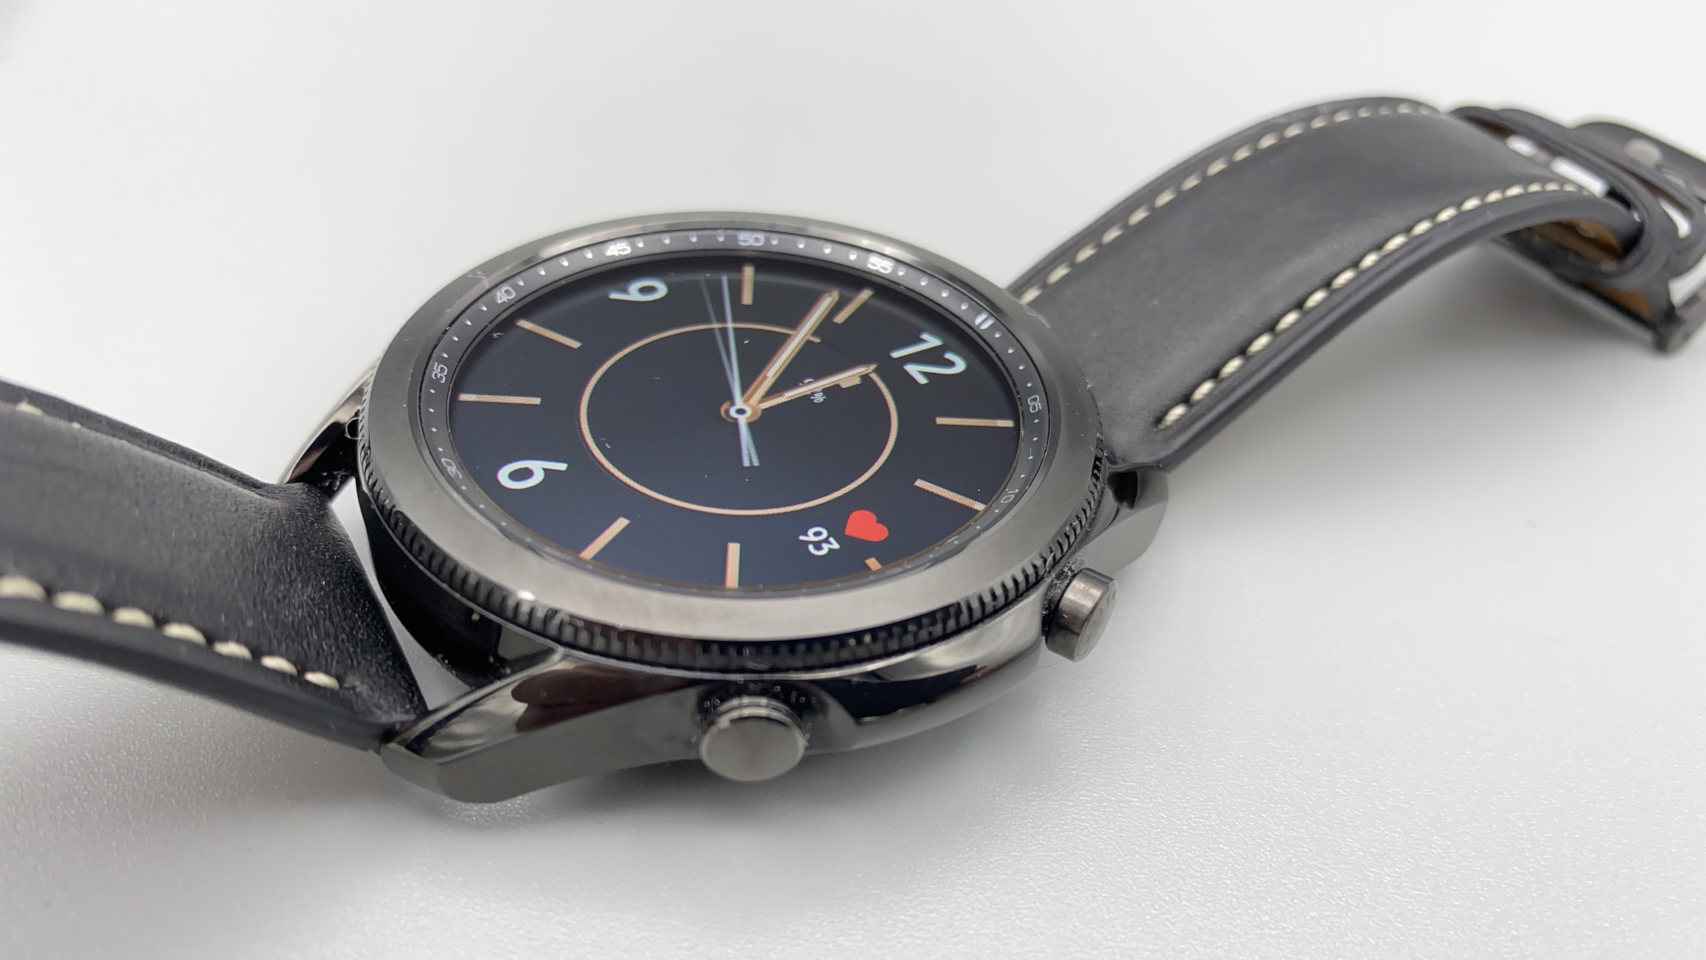 El Samsung Galaxy Watch aparenta ser un reloj tradicional